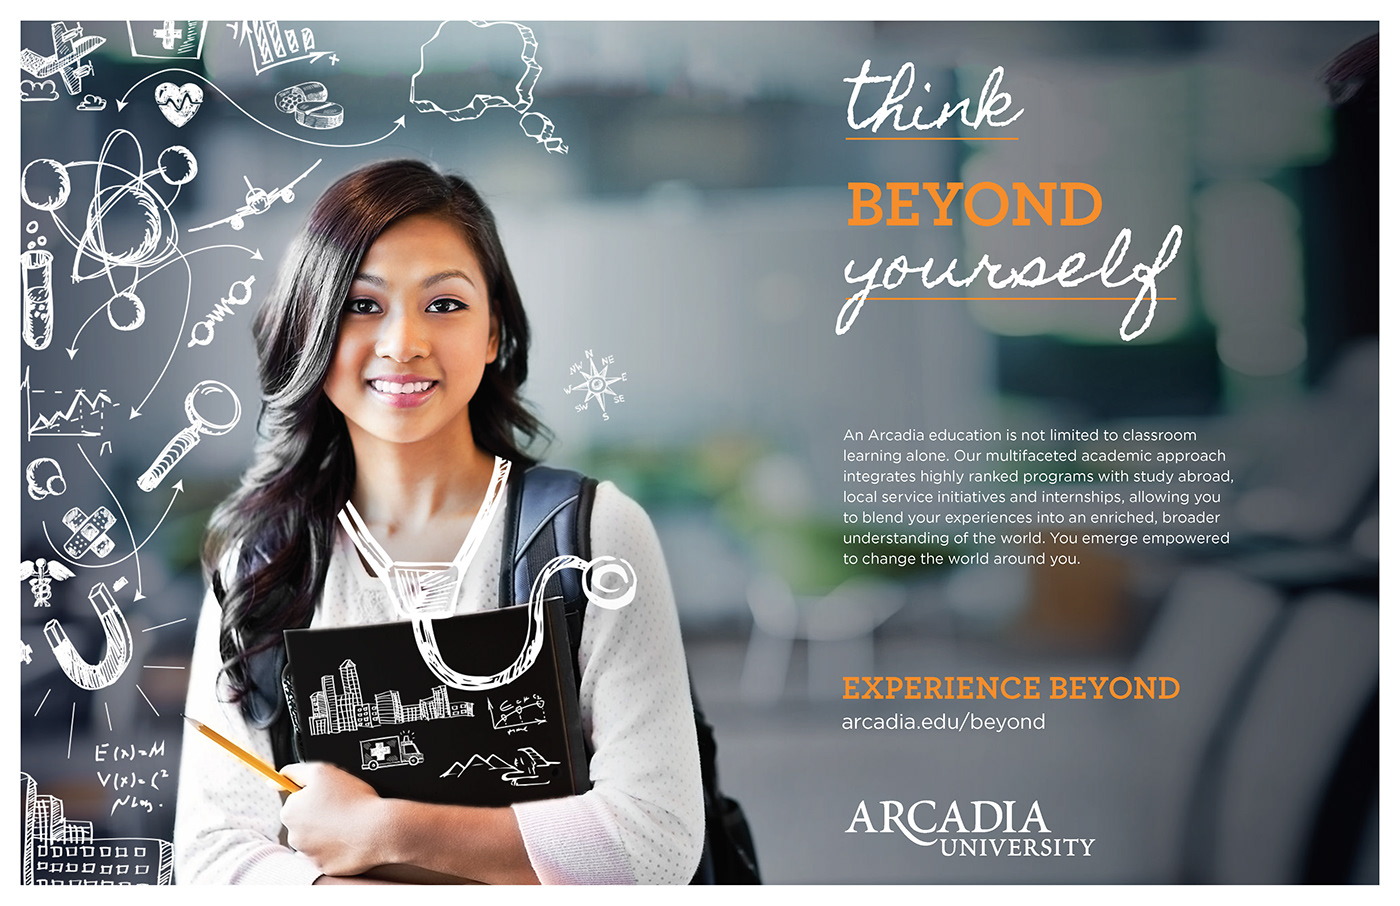 Arcadia university branding 